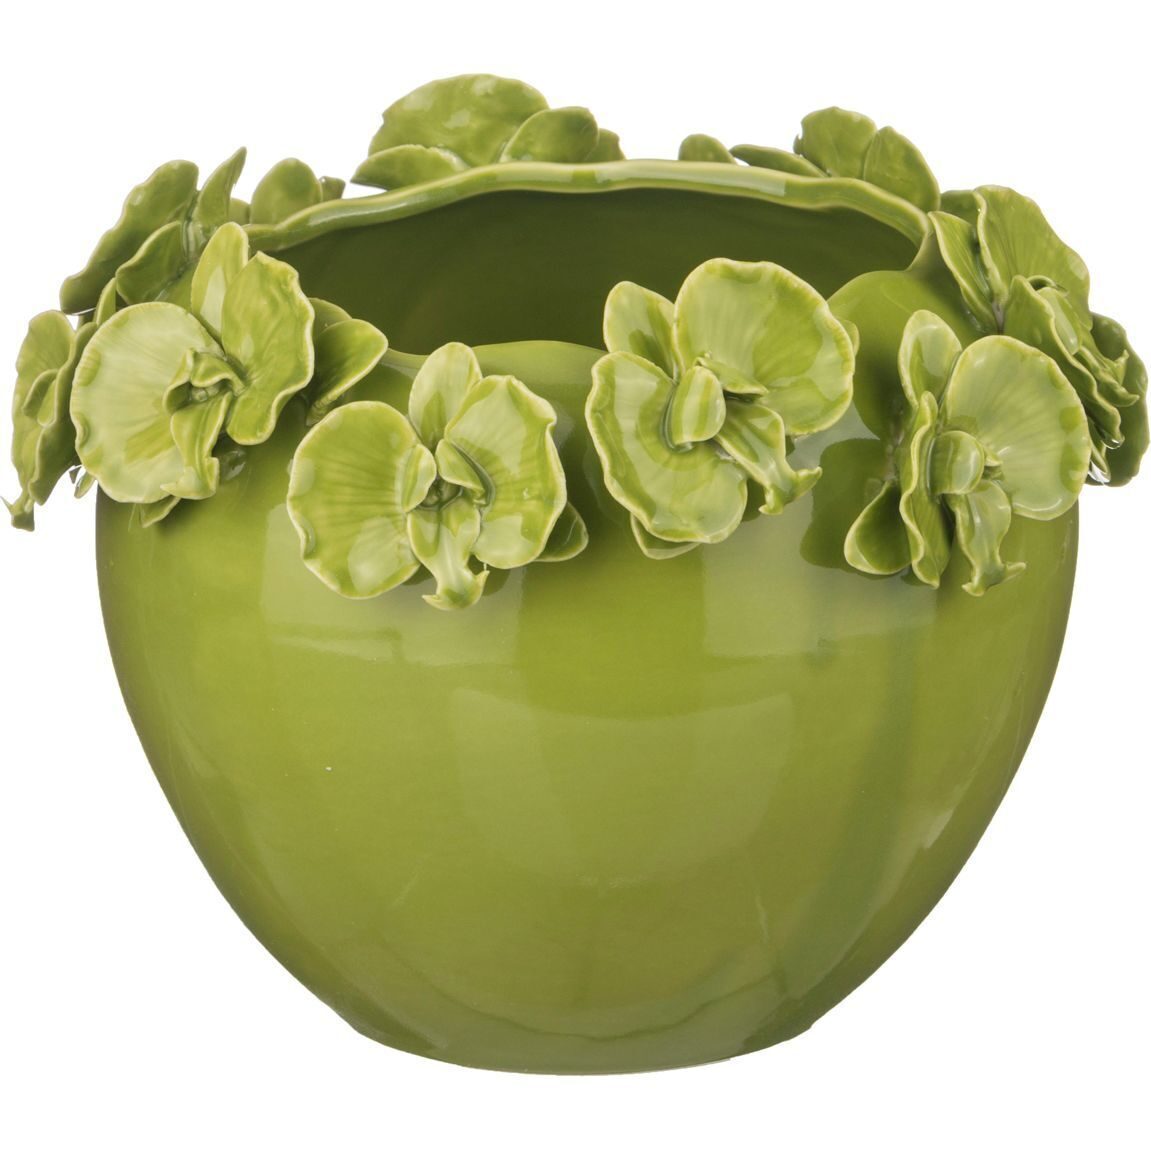 Купить вазу производителя. Ваза. Широкая ваза для цветов. Зеленая круглая ваза. Ваза с широким горлом для цветов.